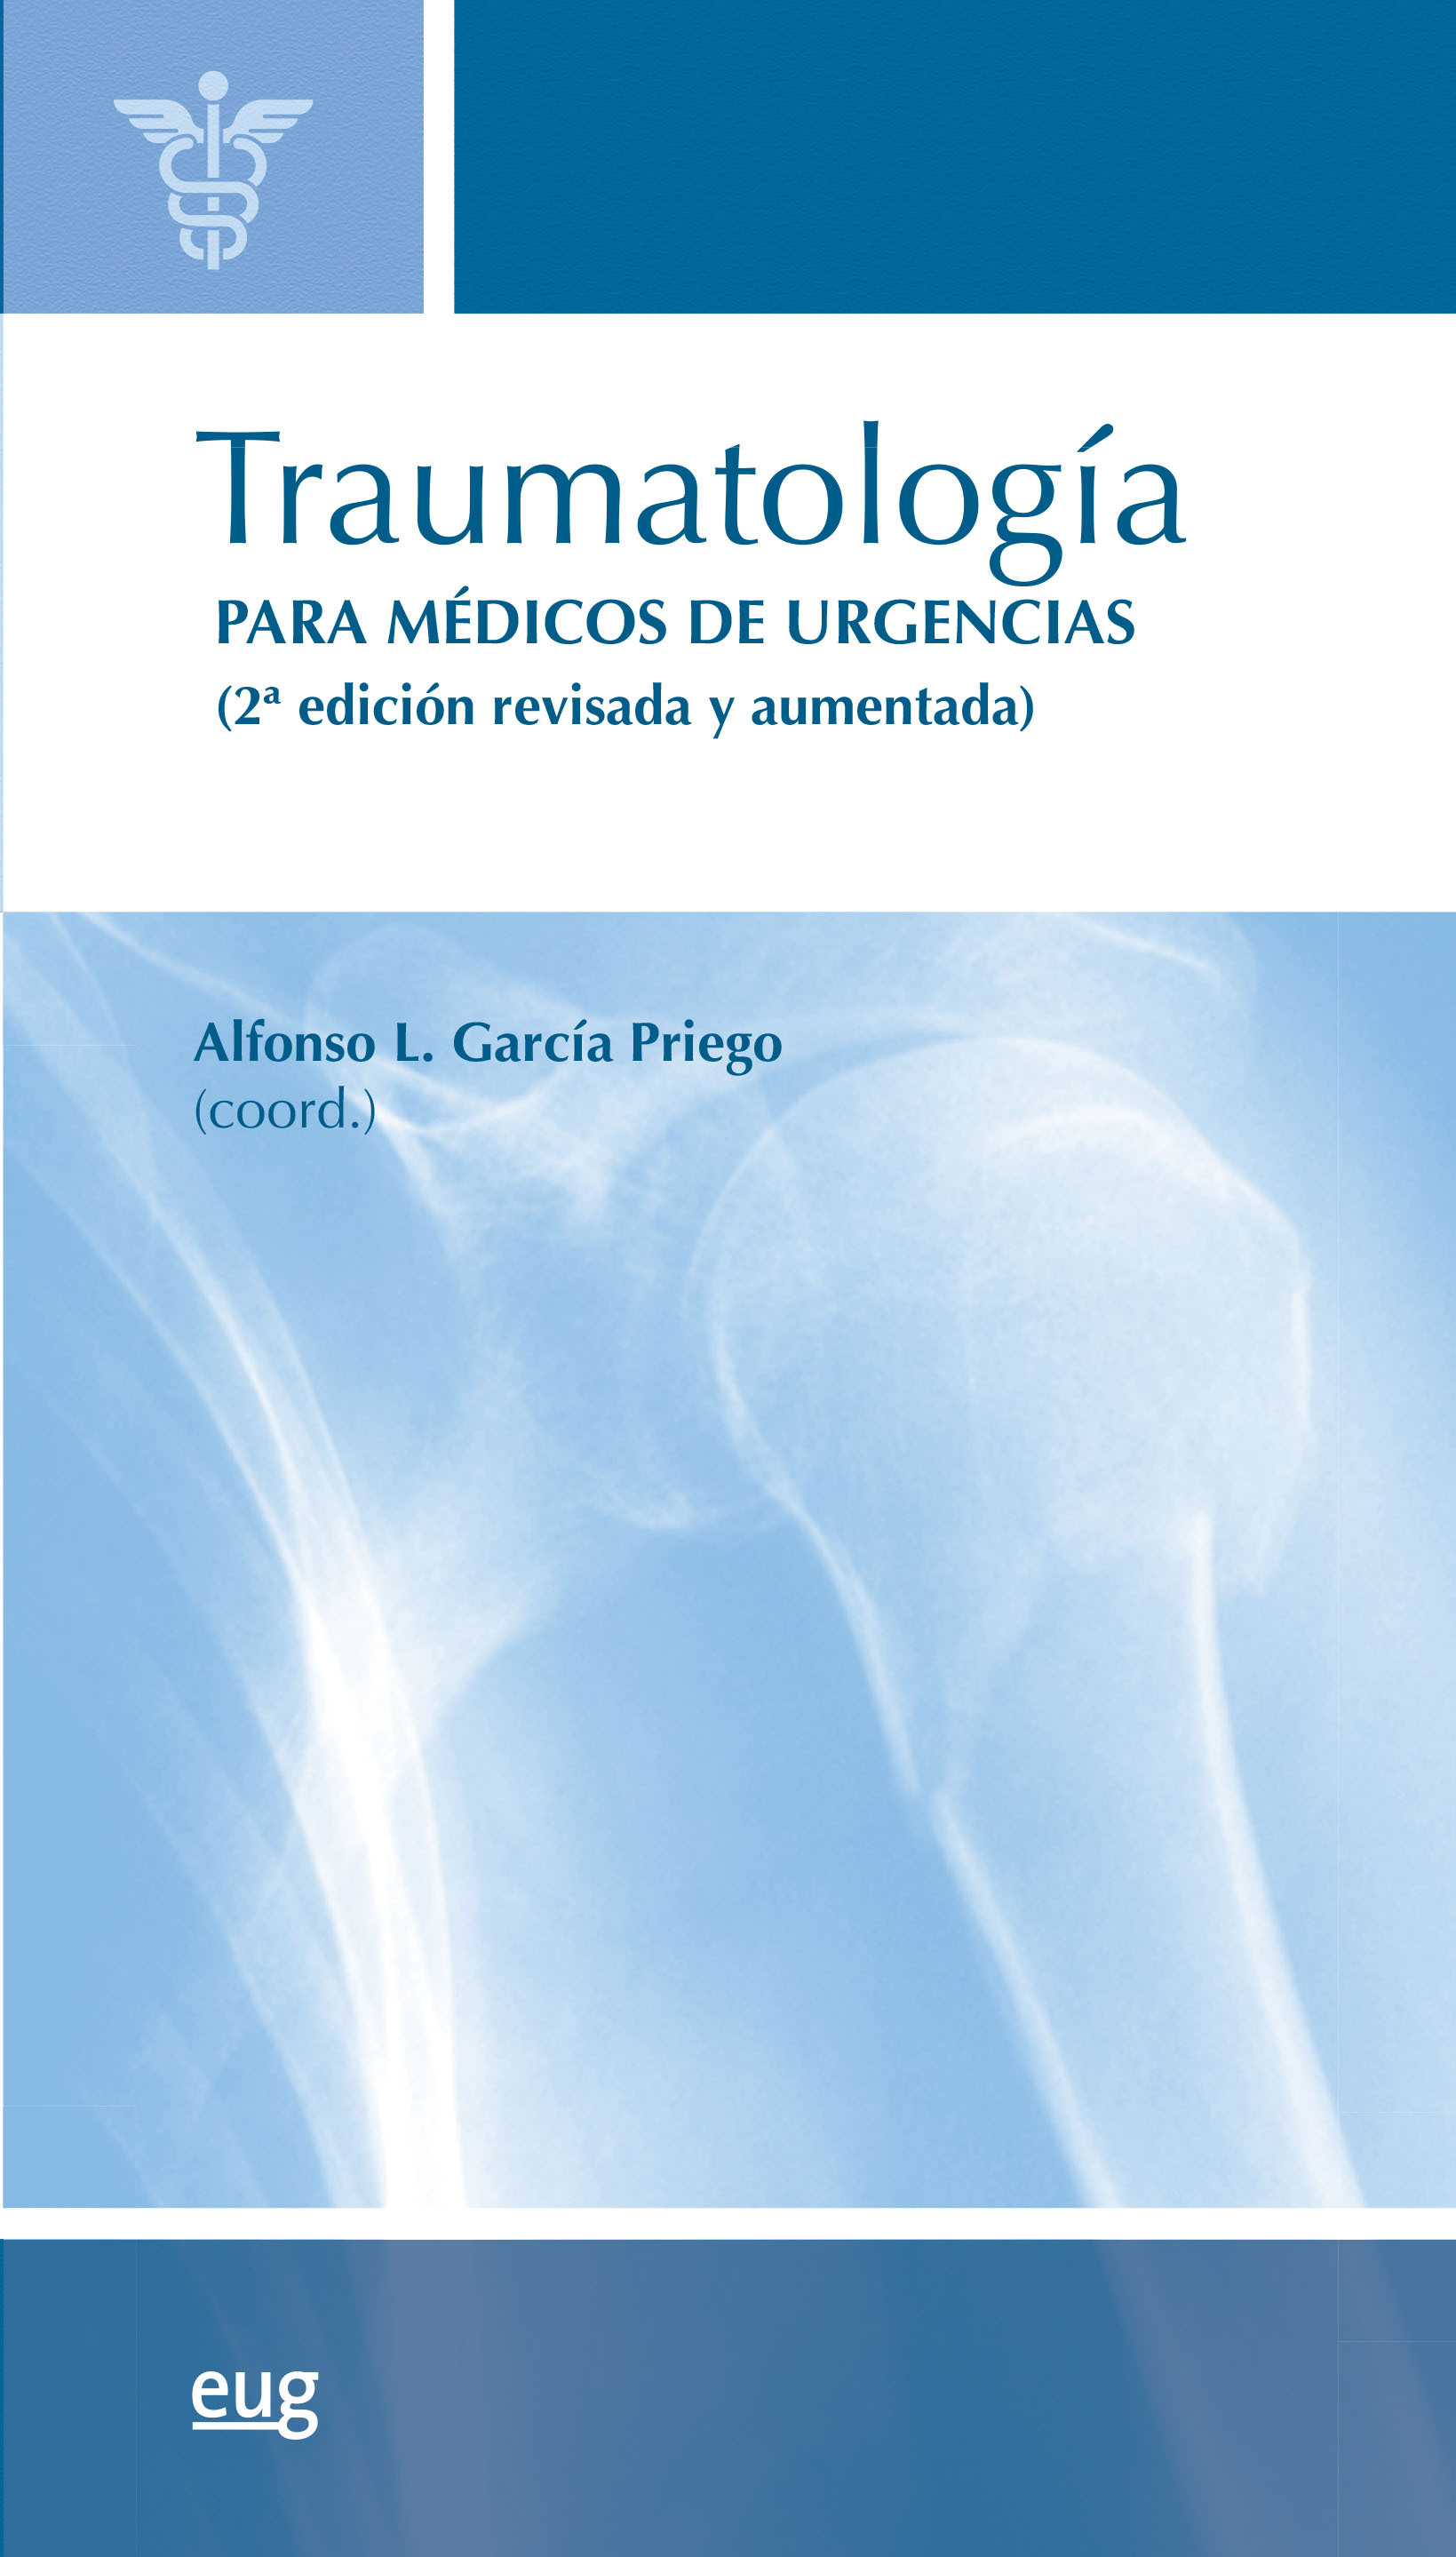 Imagen de portada del libro Traumatología para médicos de urgencias